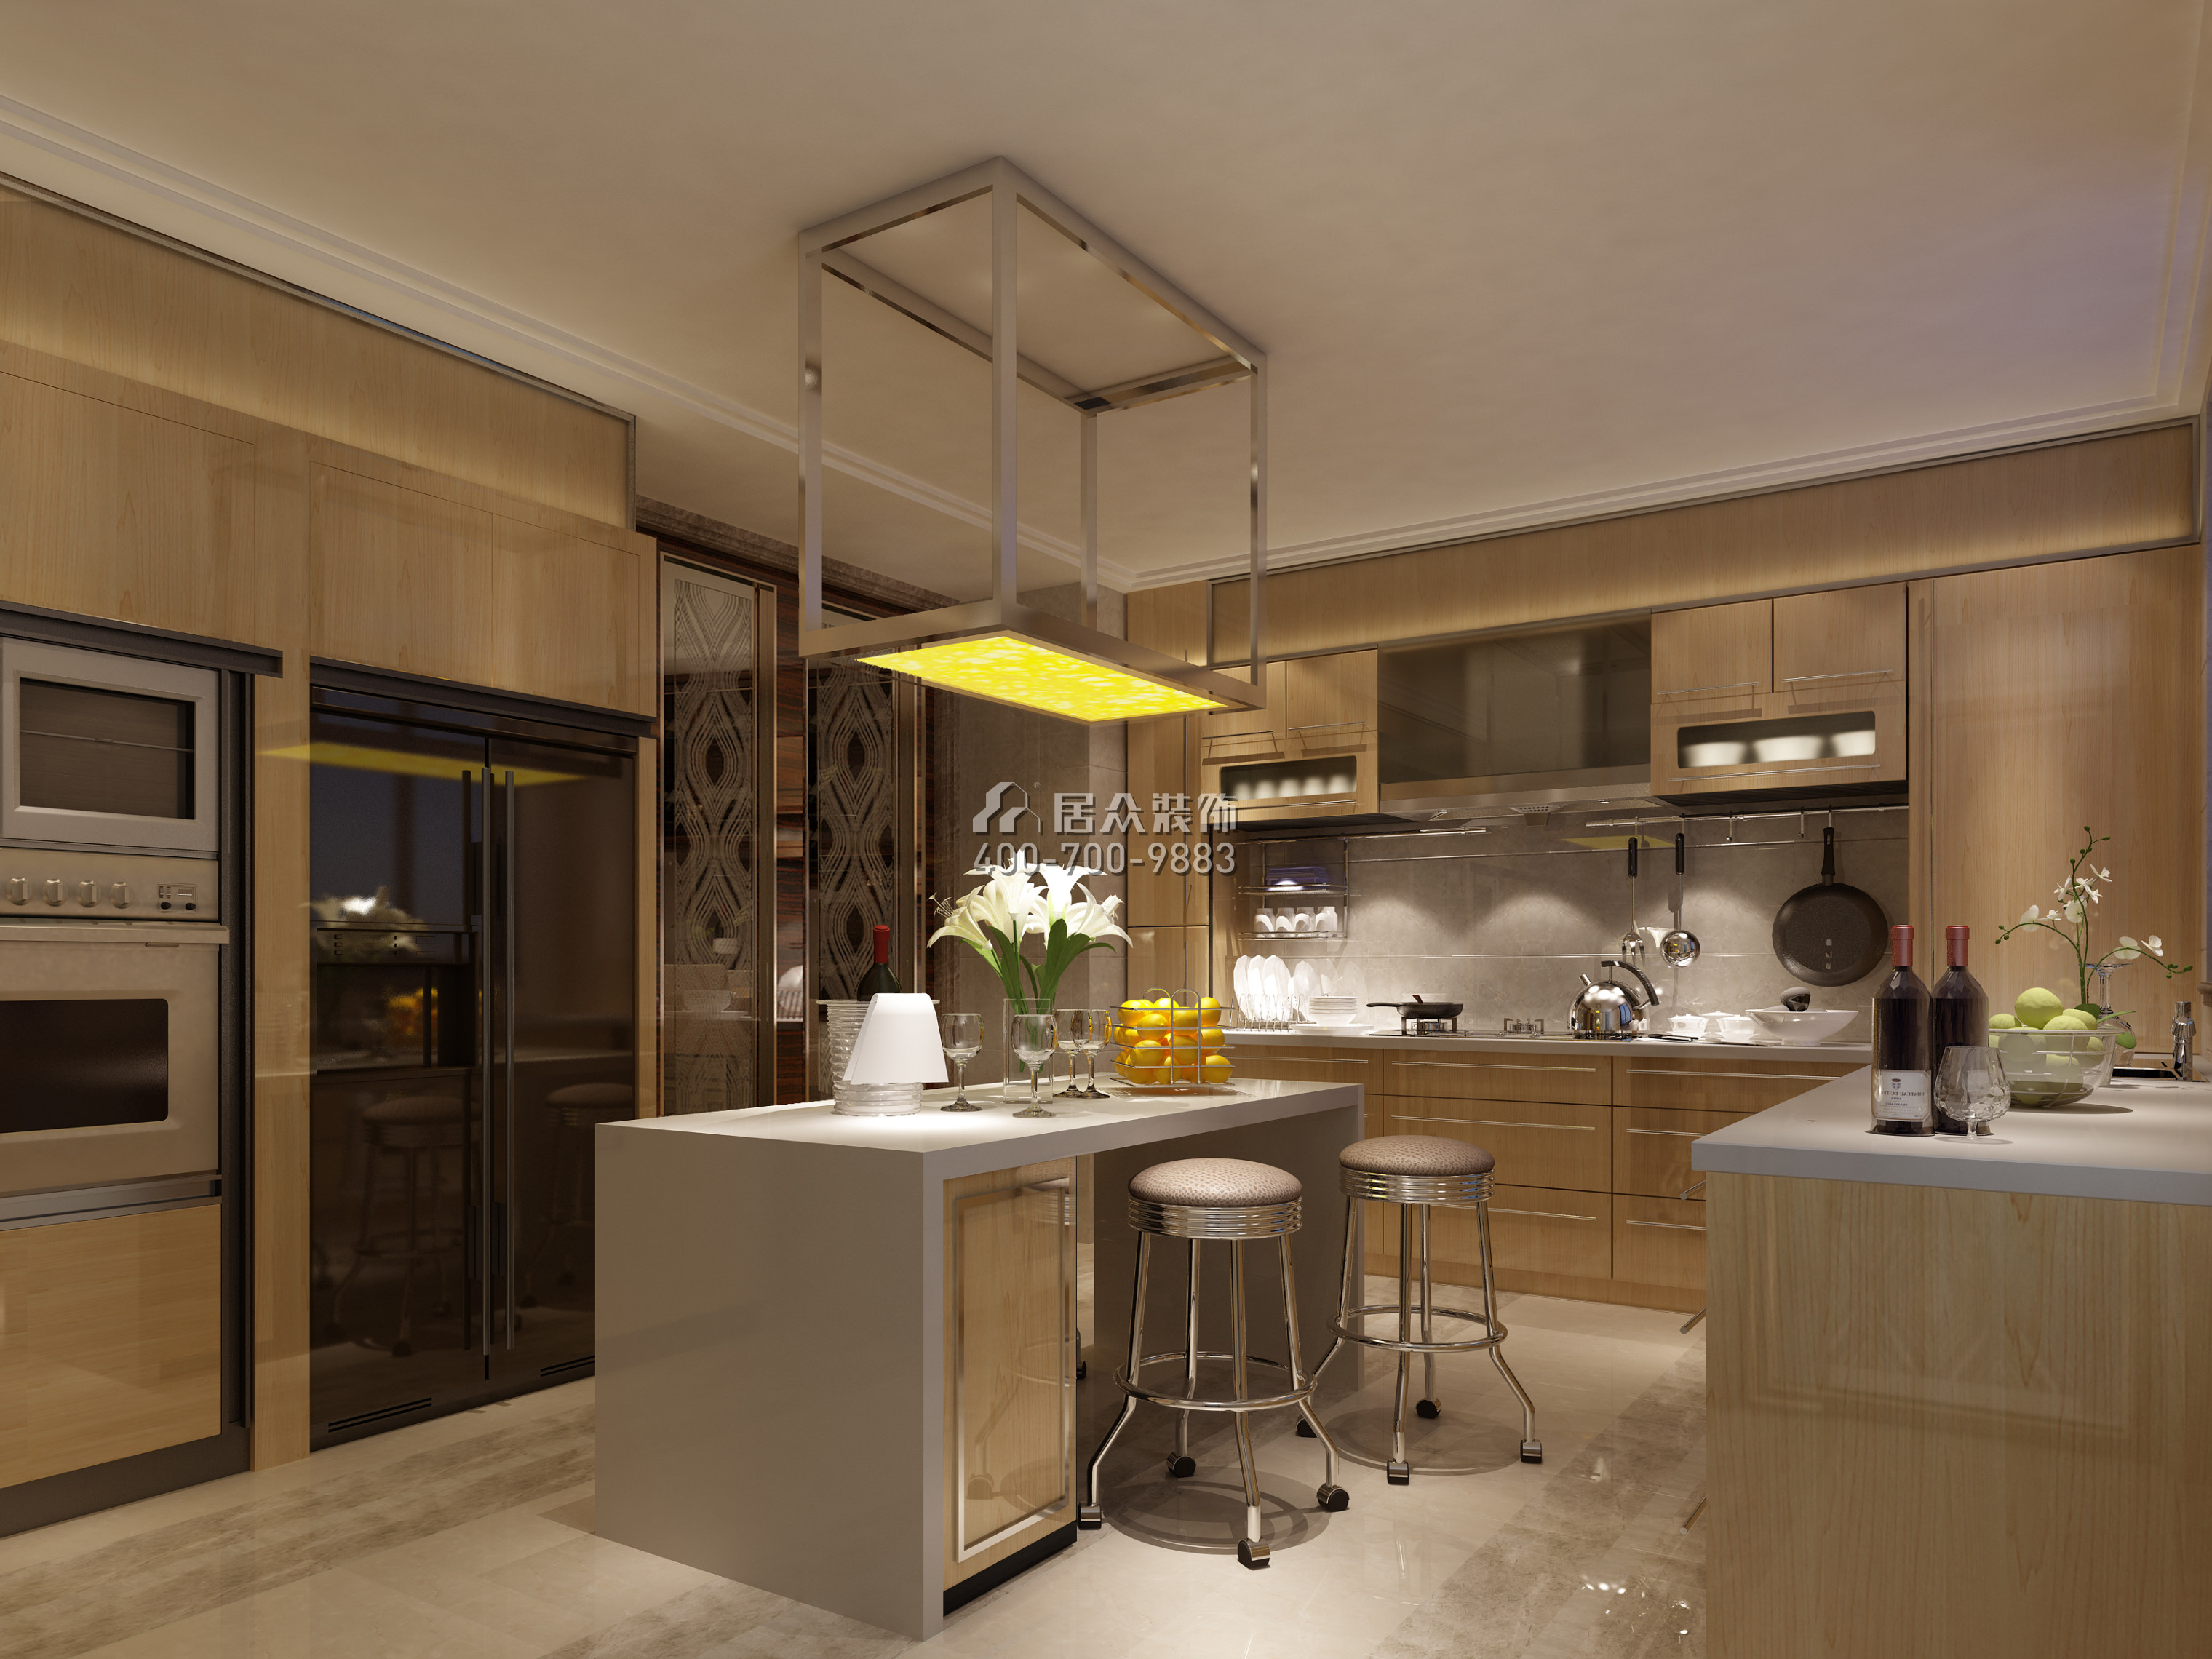 保利国际350平方米现代简约风格平层户型厨房装修效果图